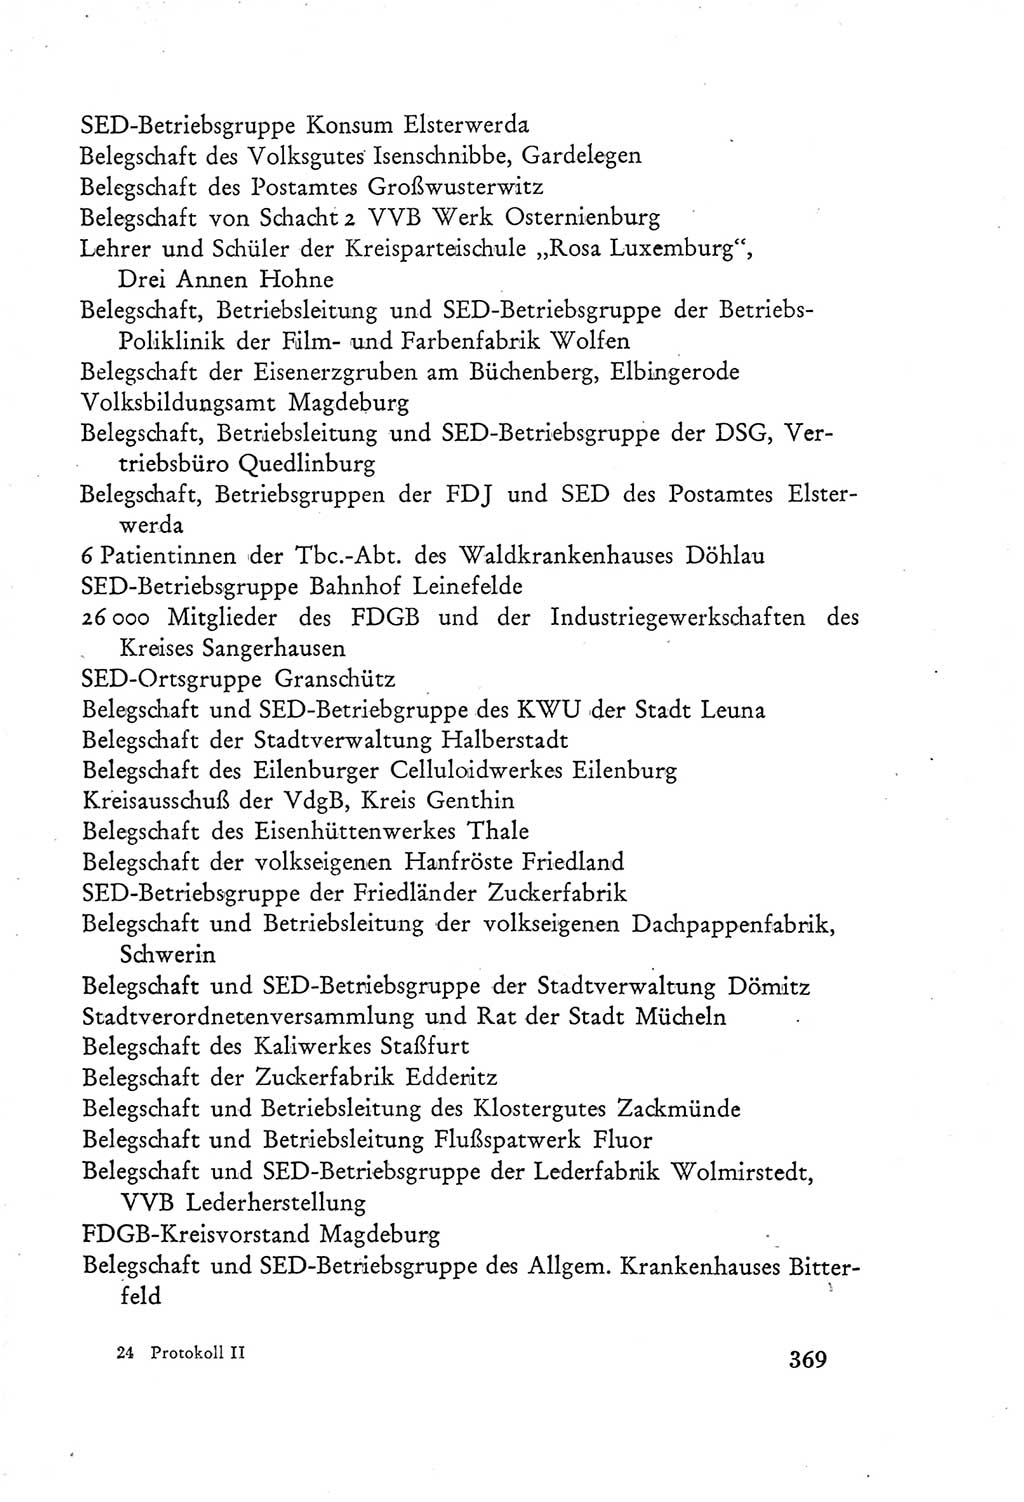 Protokoll der Verhandlungen des Ⅲ. Parteitages der Sozialistischen Einheitspartei Deutschlands (SED) [Deutsche Demokratische Republik (DDR)] 1950, Band 2, Seite 369 (Prot. Verh. Ⅲ. PT SED DDR 1950, Bd. 2, S. 369)